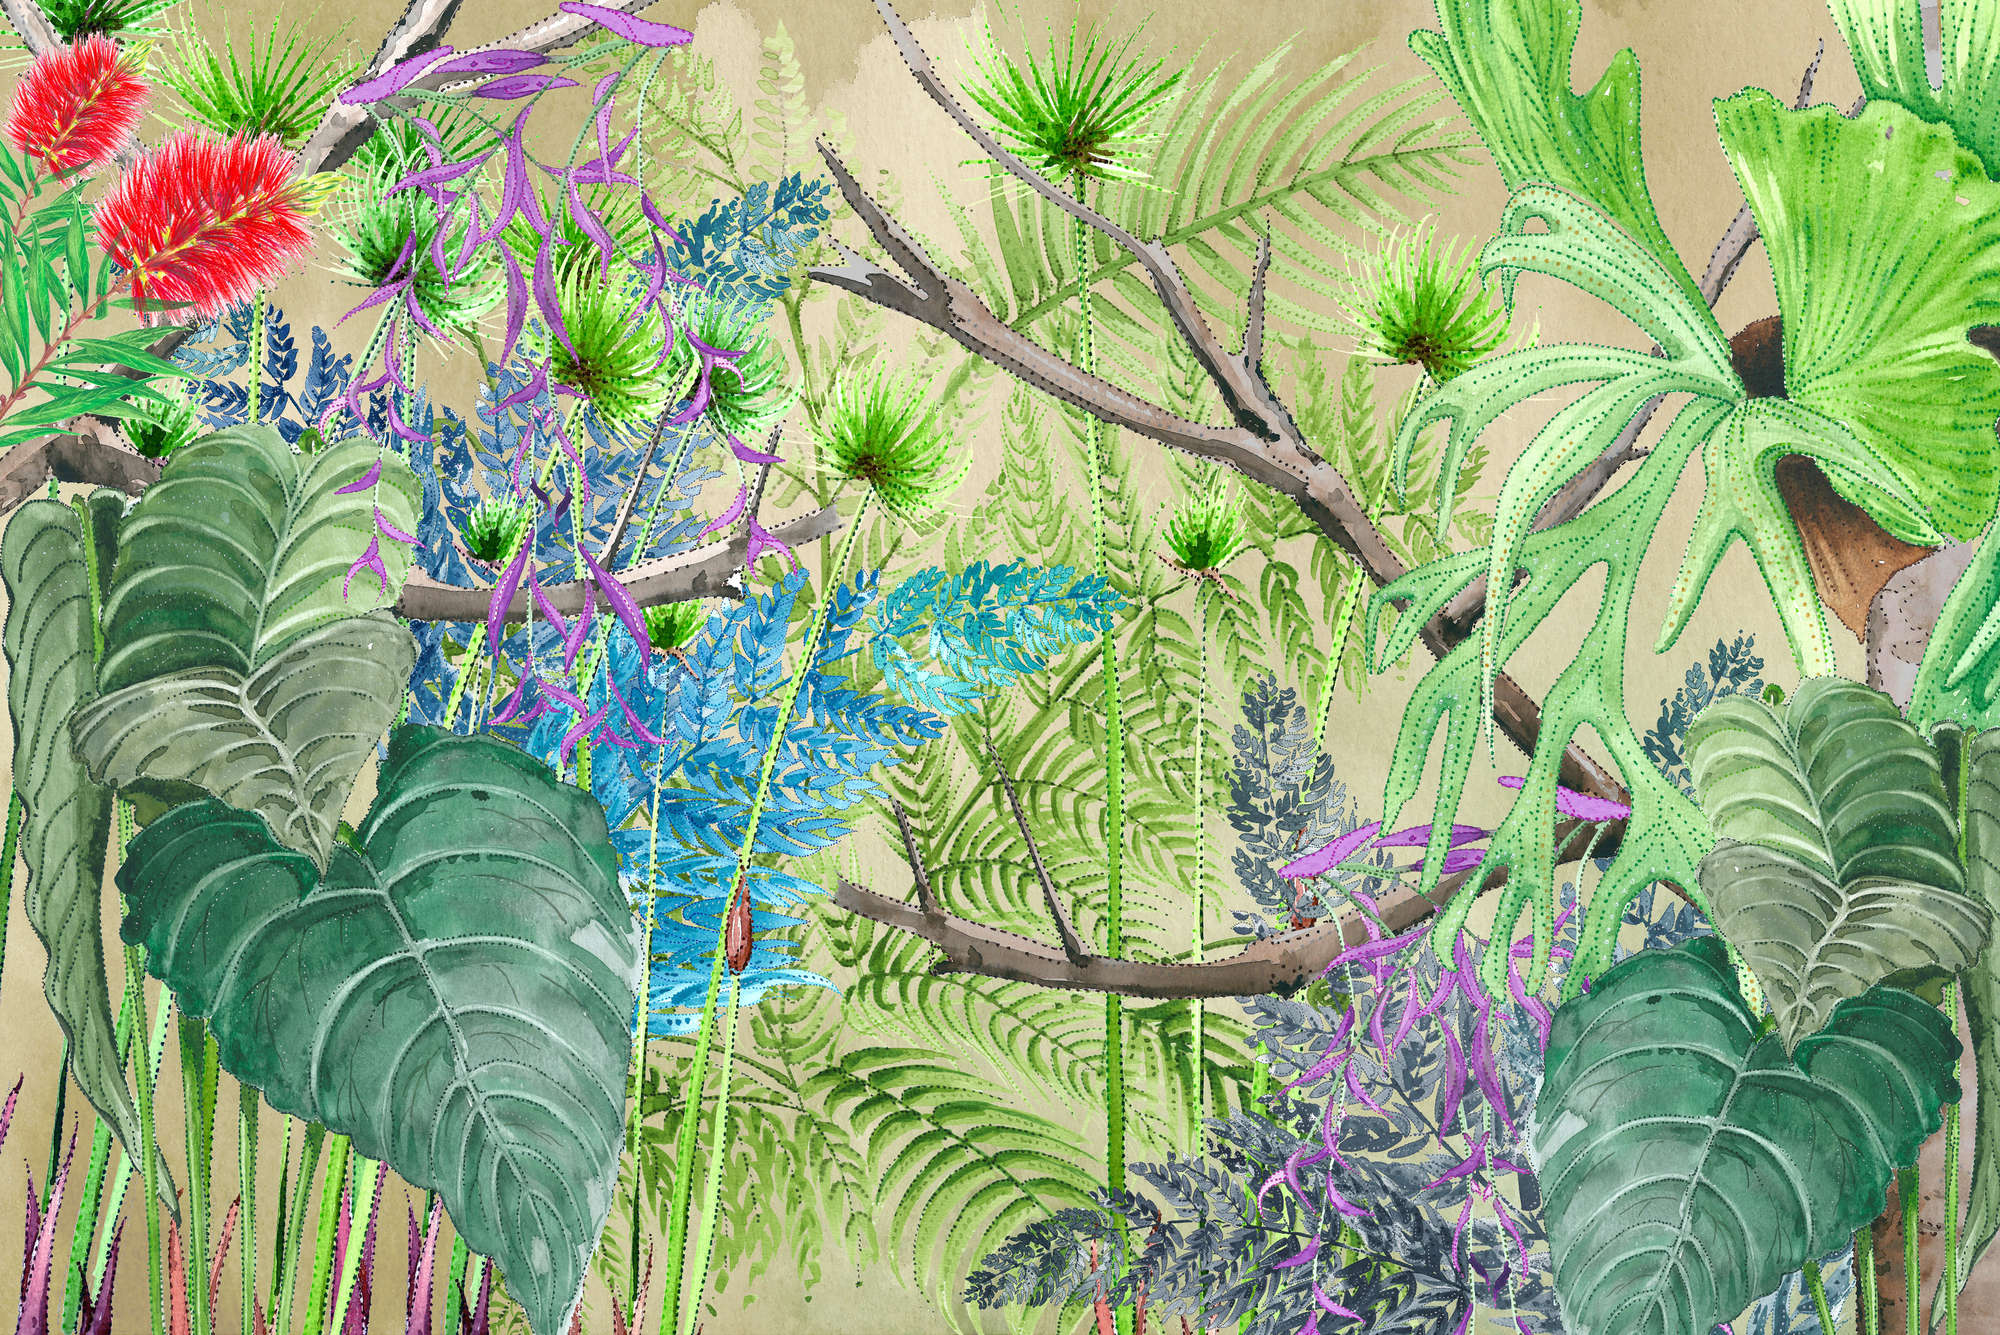             Junglebehang met bloemen in blauw en groen op parelmoer glad vlies
        